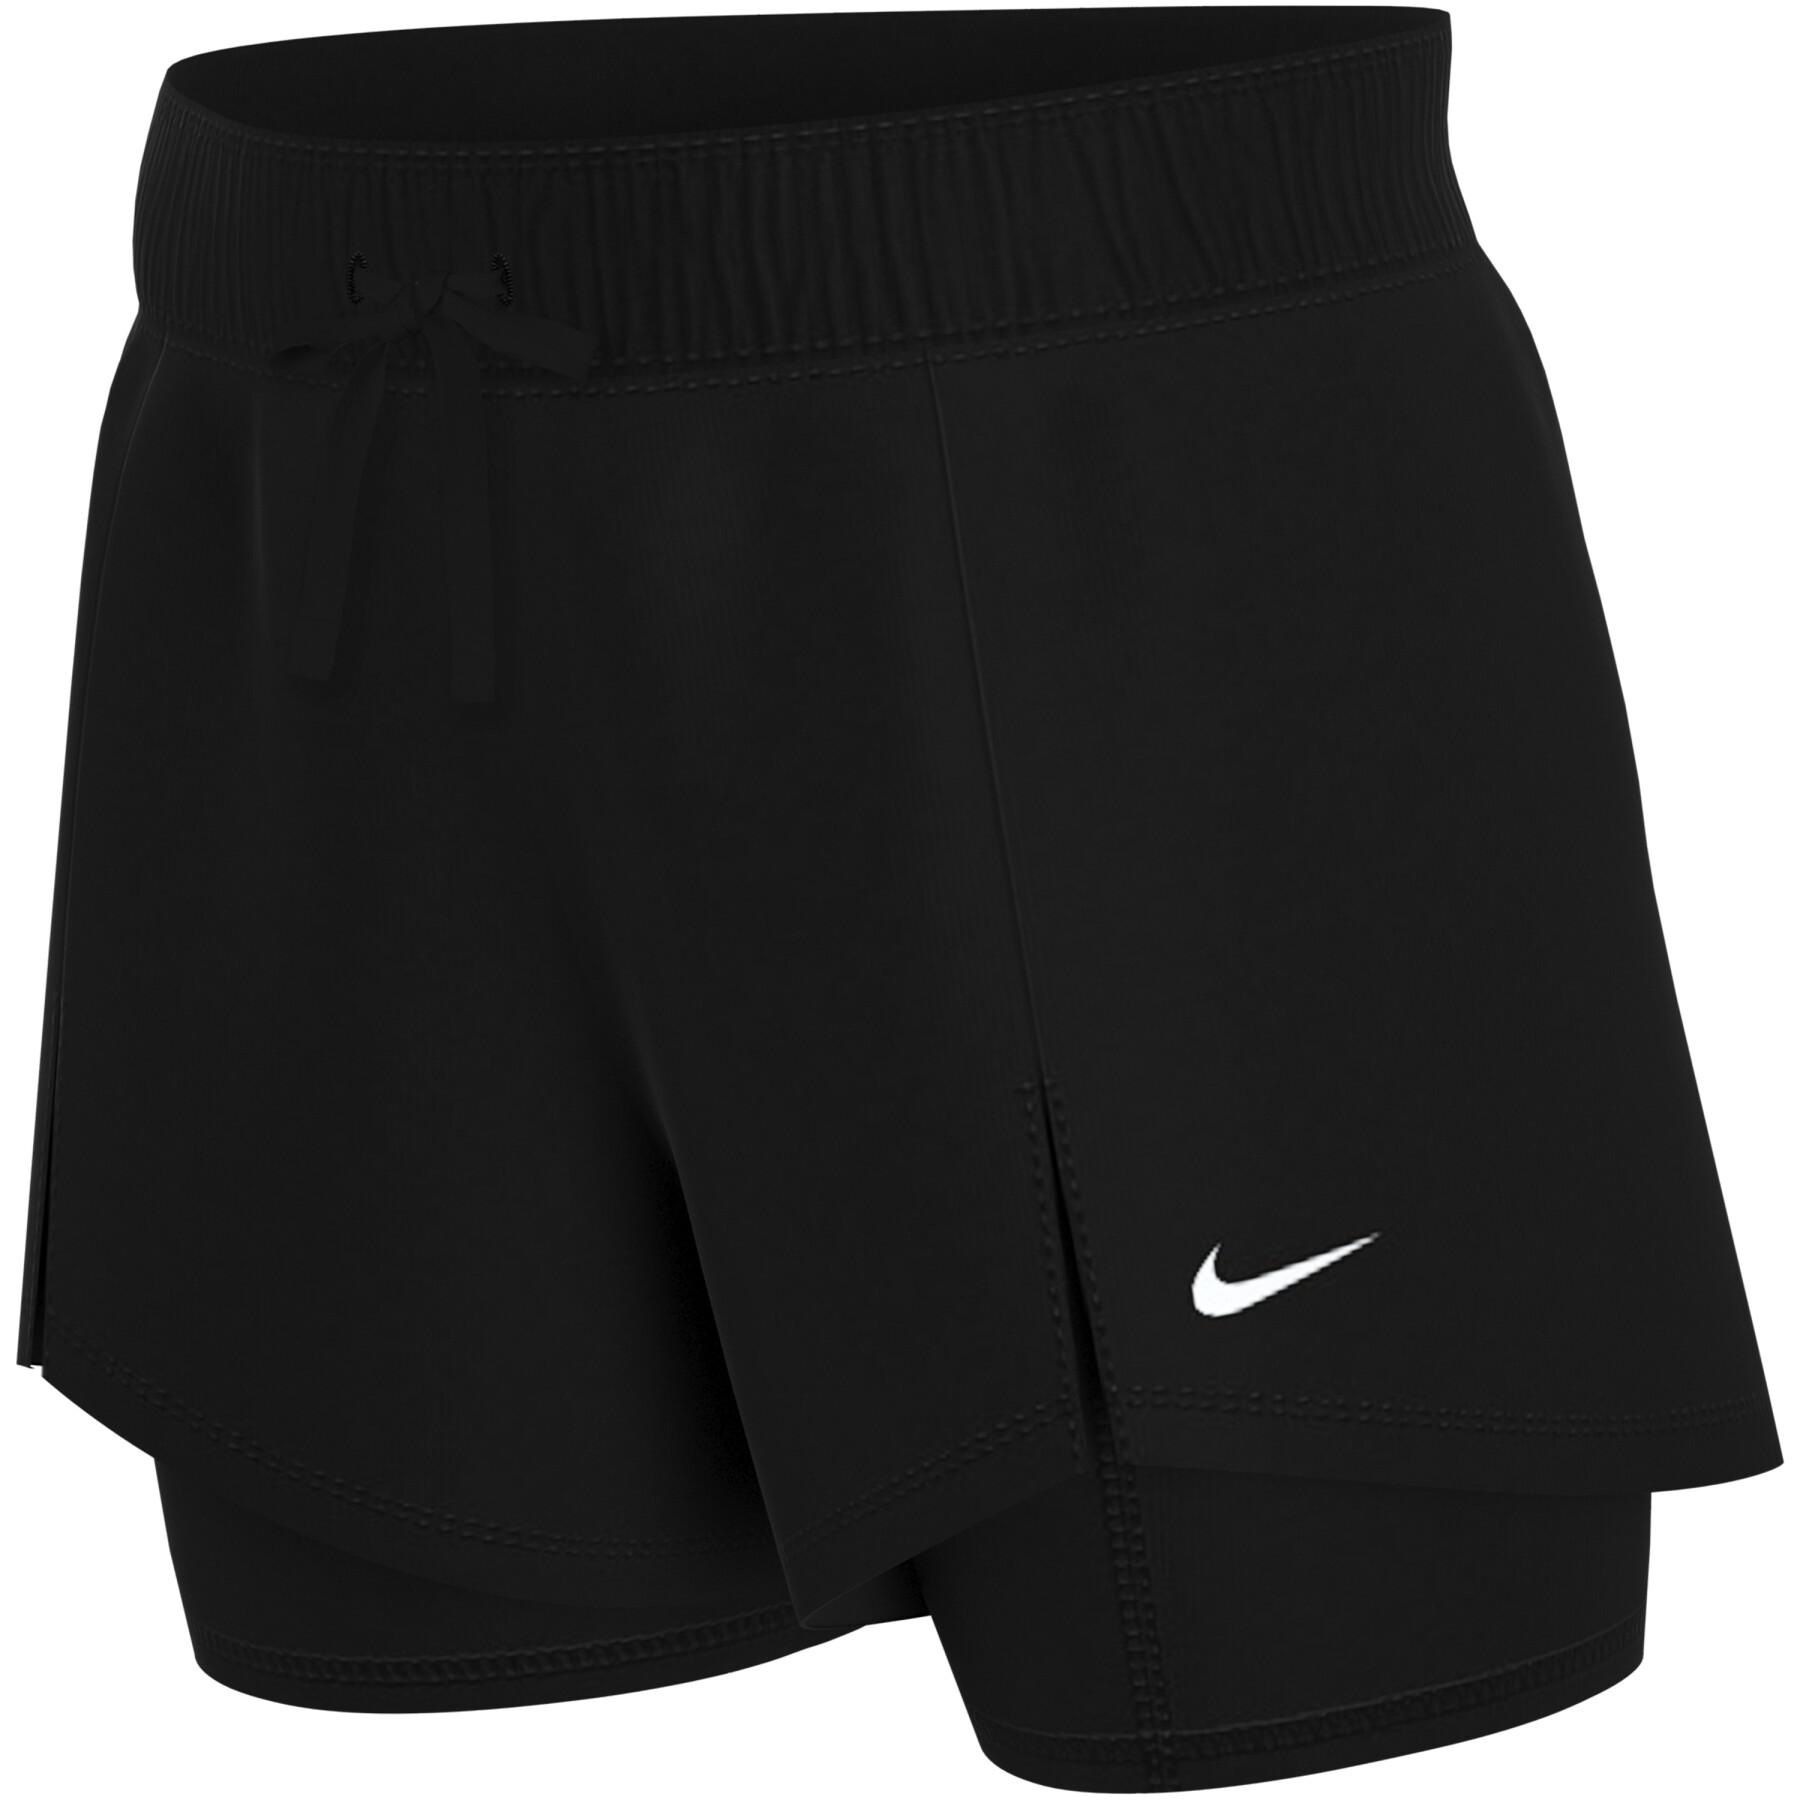 Pantalón corto de mujer Nike flex essential 2-in-1